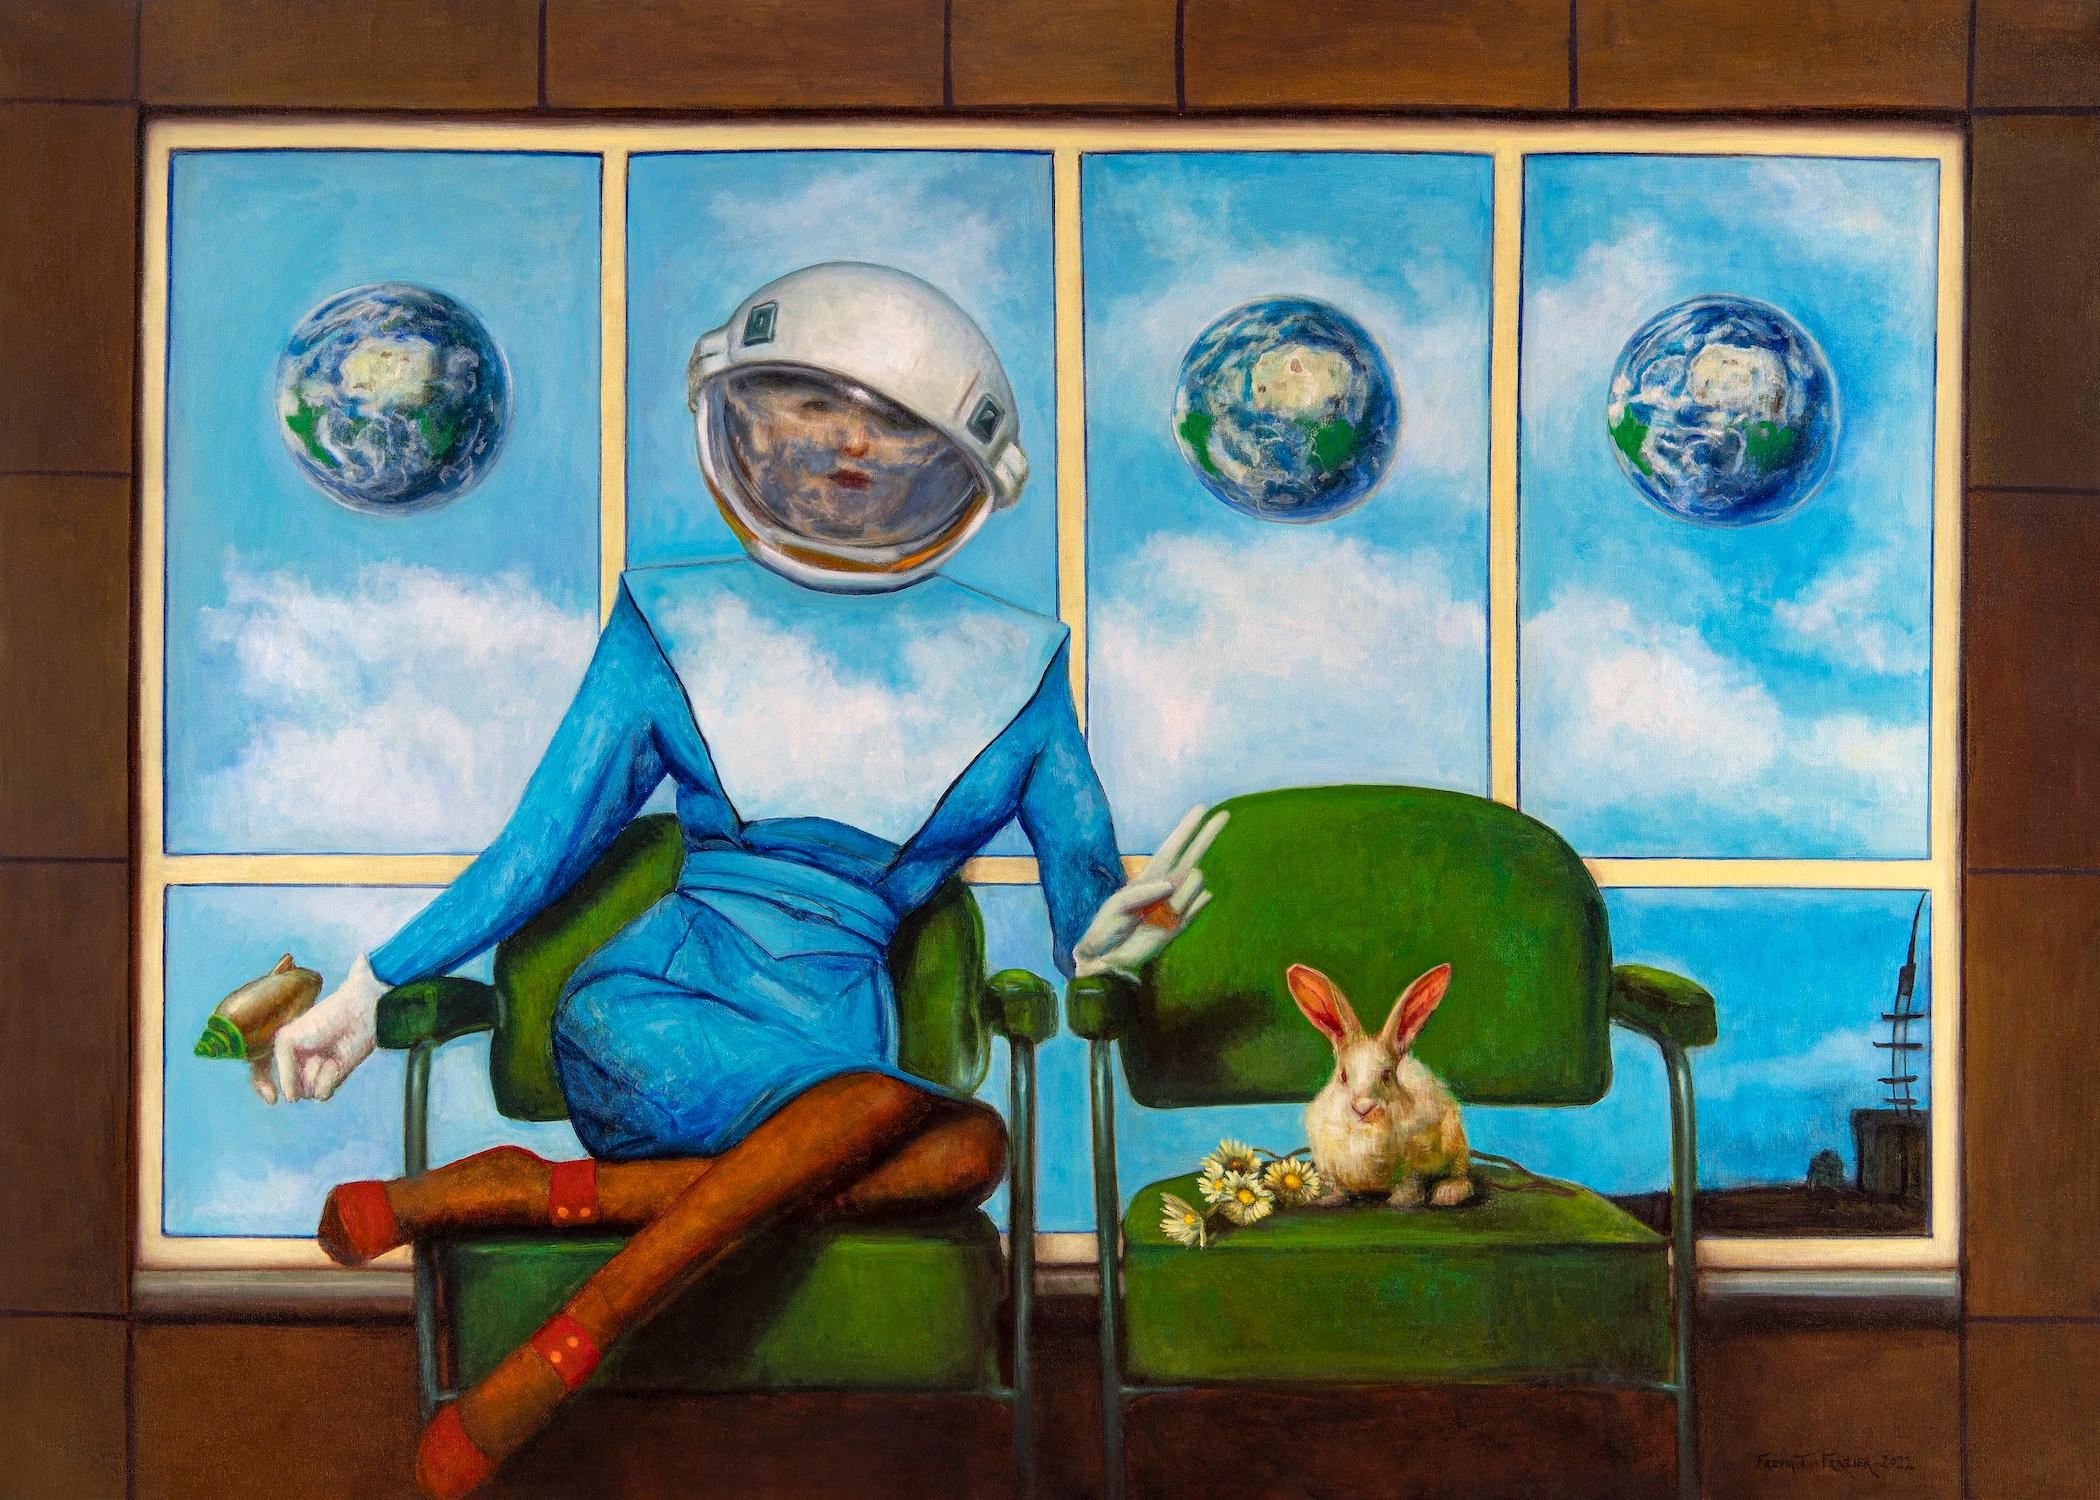 Come In Peace – Futuristische Frau im Weltraum, sitzend neben einem Bunny